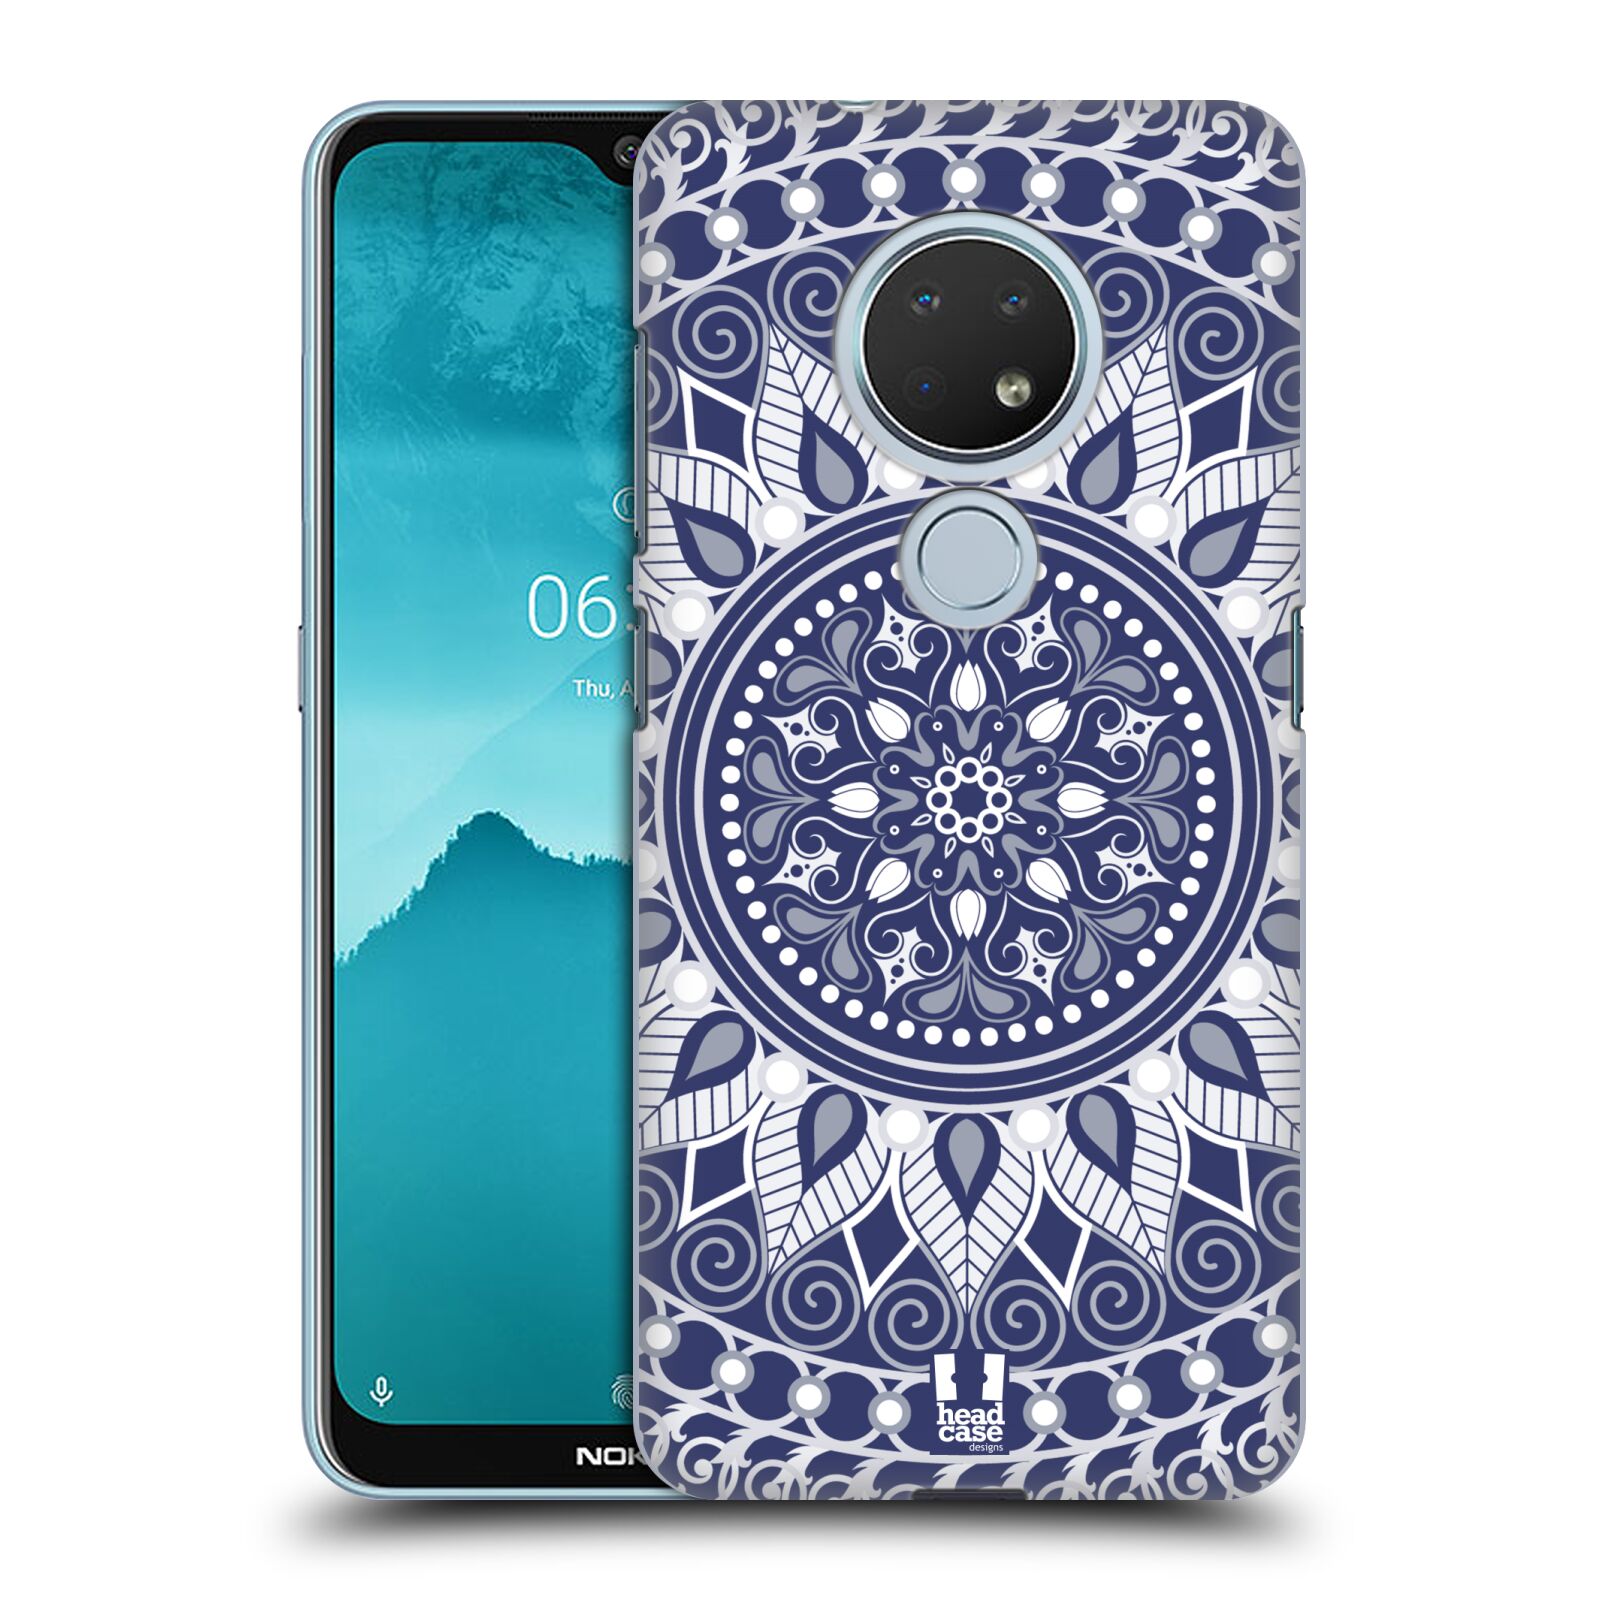 Pouzdro na mobil Nokia 6.2 - HEAD CASE - vzor Indie Mandala slunce barevný motiv MODRÁ